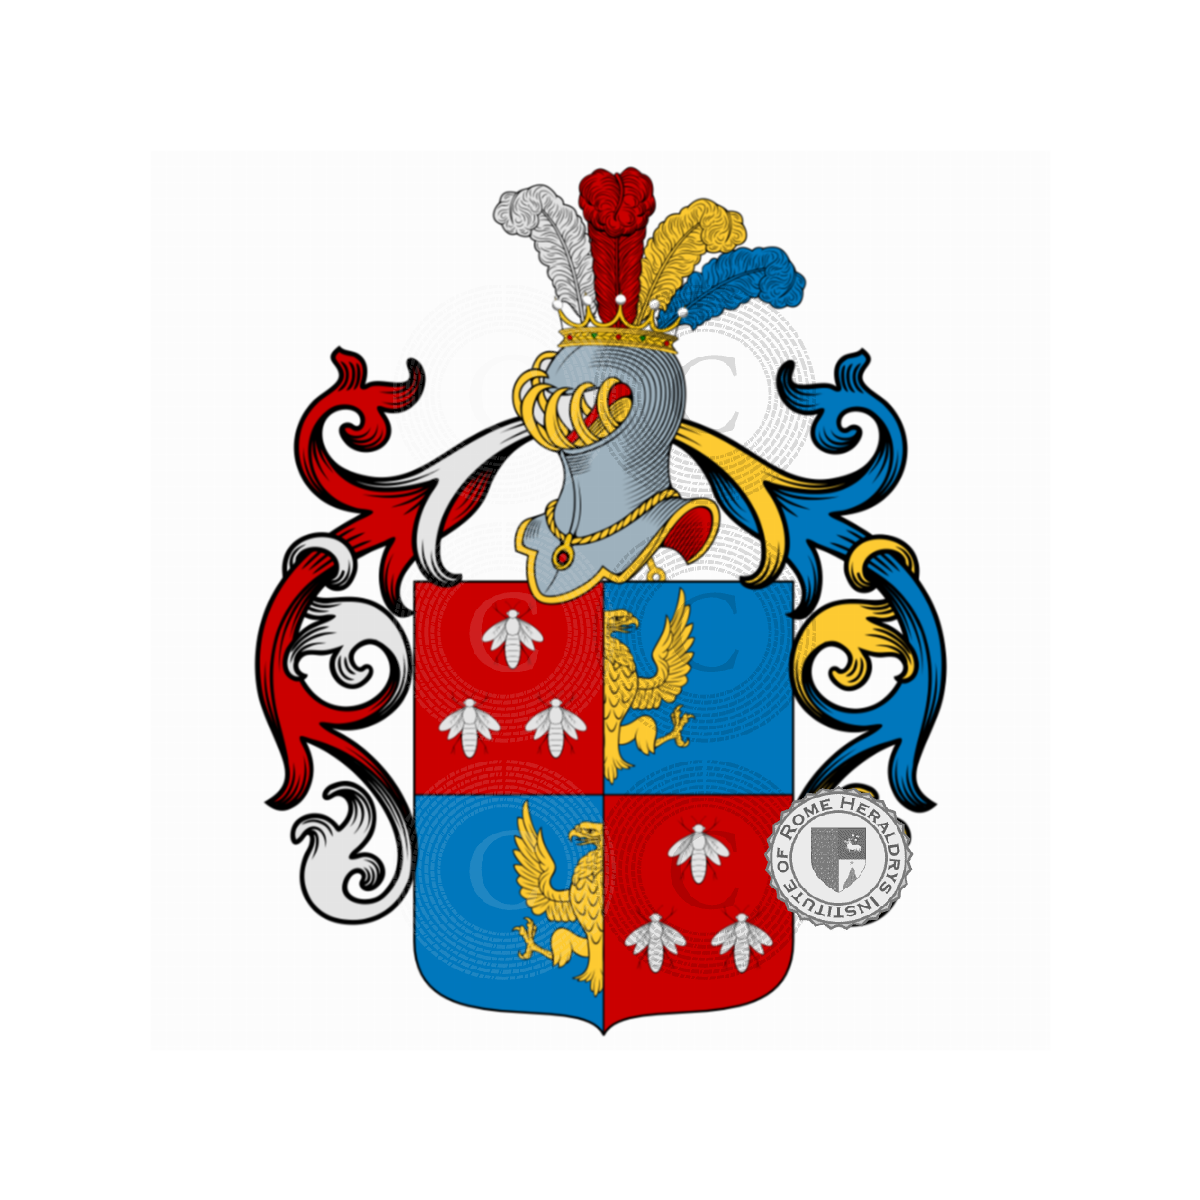 Wappen der FamilieMiorini, Miorin,Miorini,Miorini Edler Von Sebentenberg